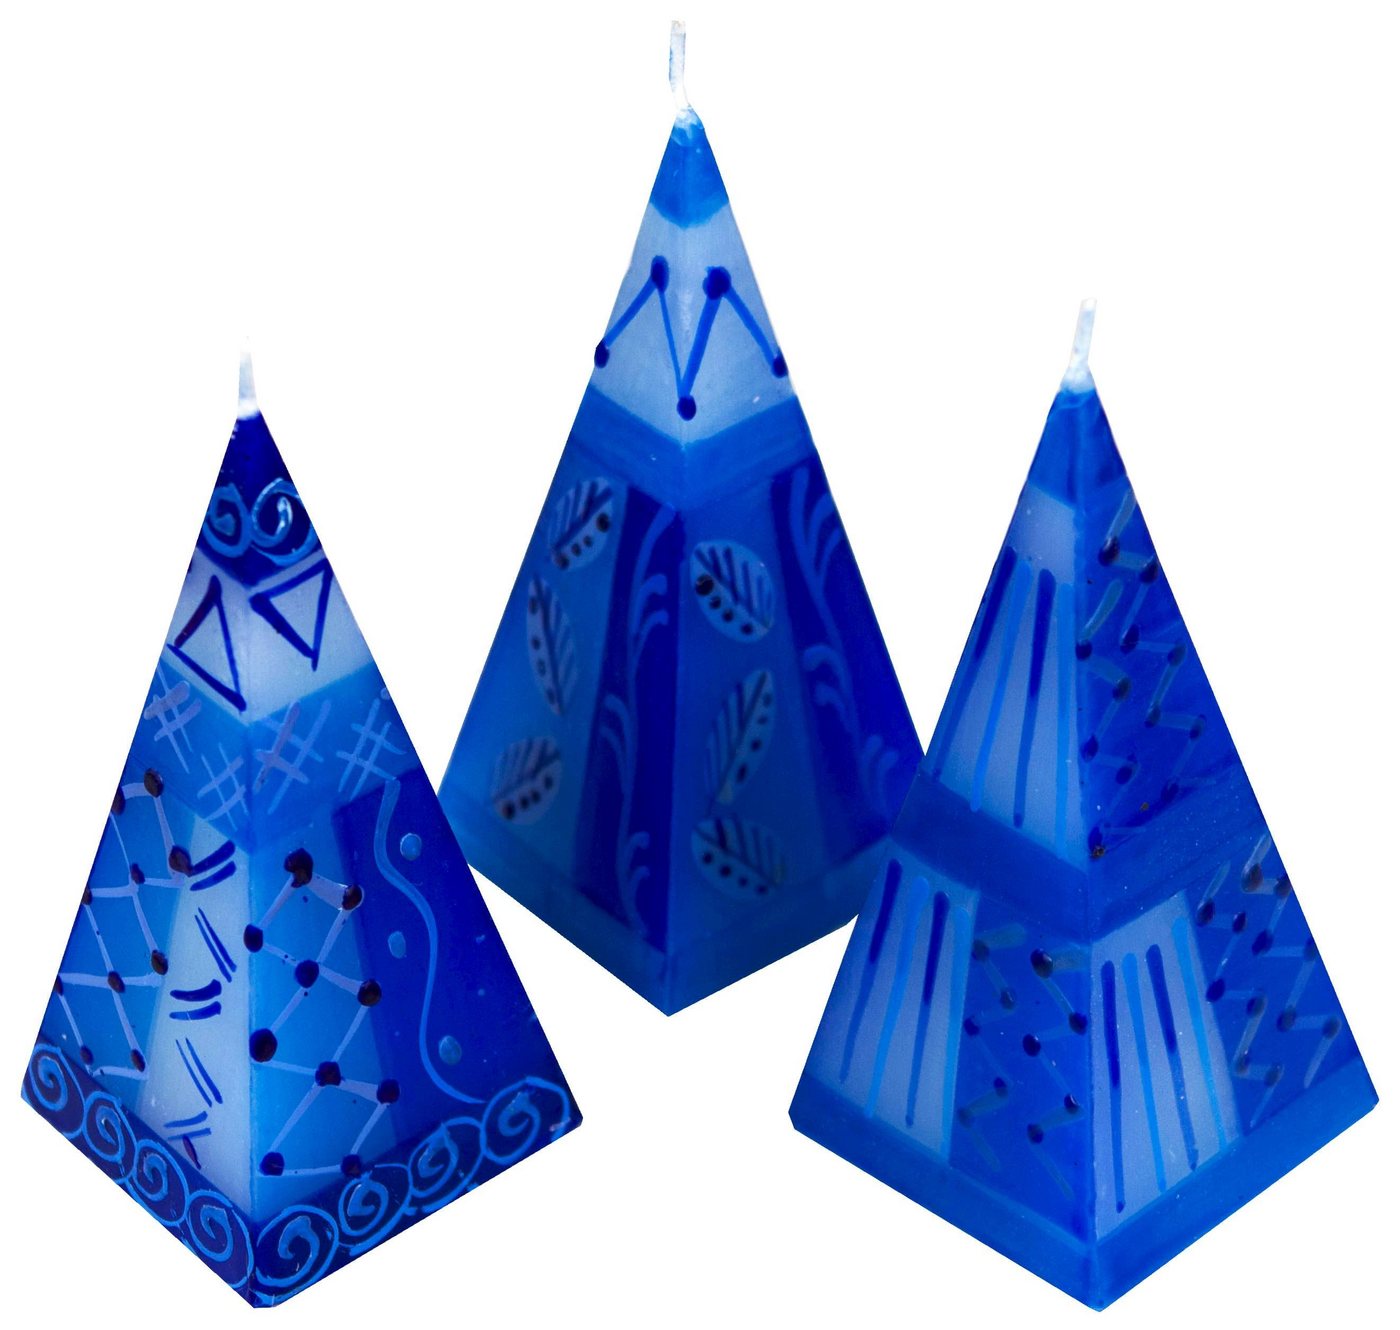 Afrika-Deko Formkerze 3er Set afrikanische Pyramidenkerzen (Spar-Set, 3 Kerzen), Afrika-Deko 3er Kerzenset handbemalte Pyramidenkerzen aus Afrika handgefertigte afrikanische Pyramiden Kerze in verschiedene Designs von Afrika-Deko